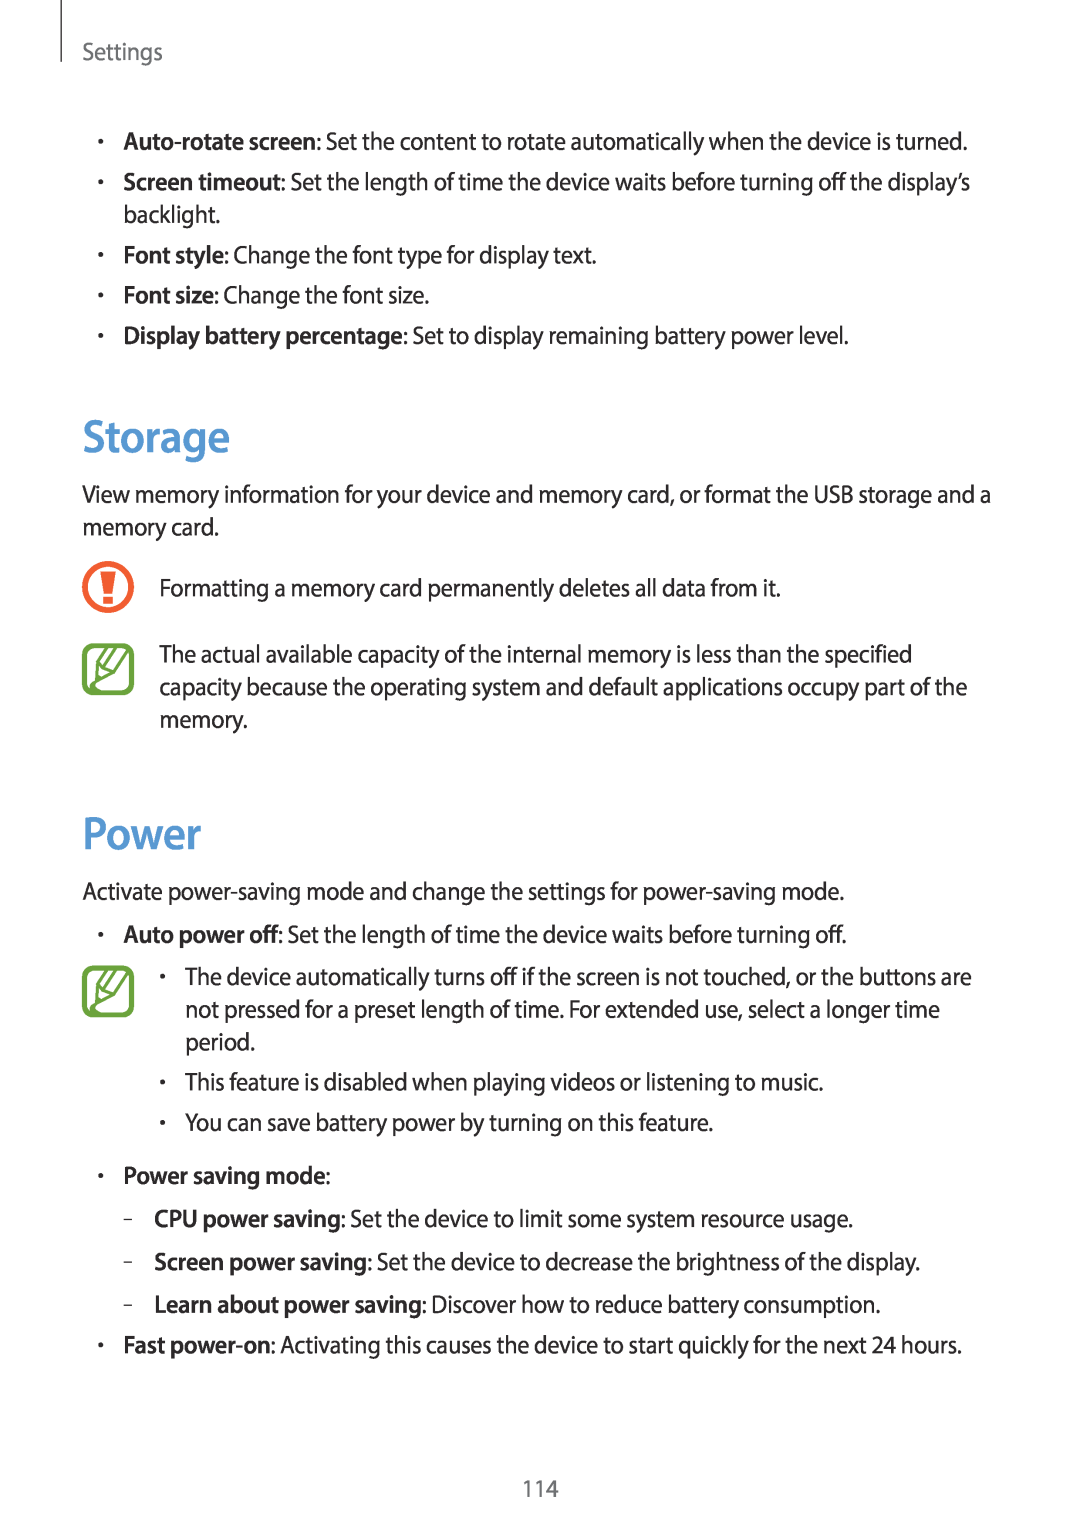 Samsung EK-GC100 user manual Storage, Power saving mode, Settings 